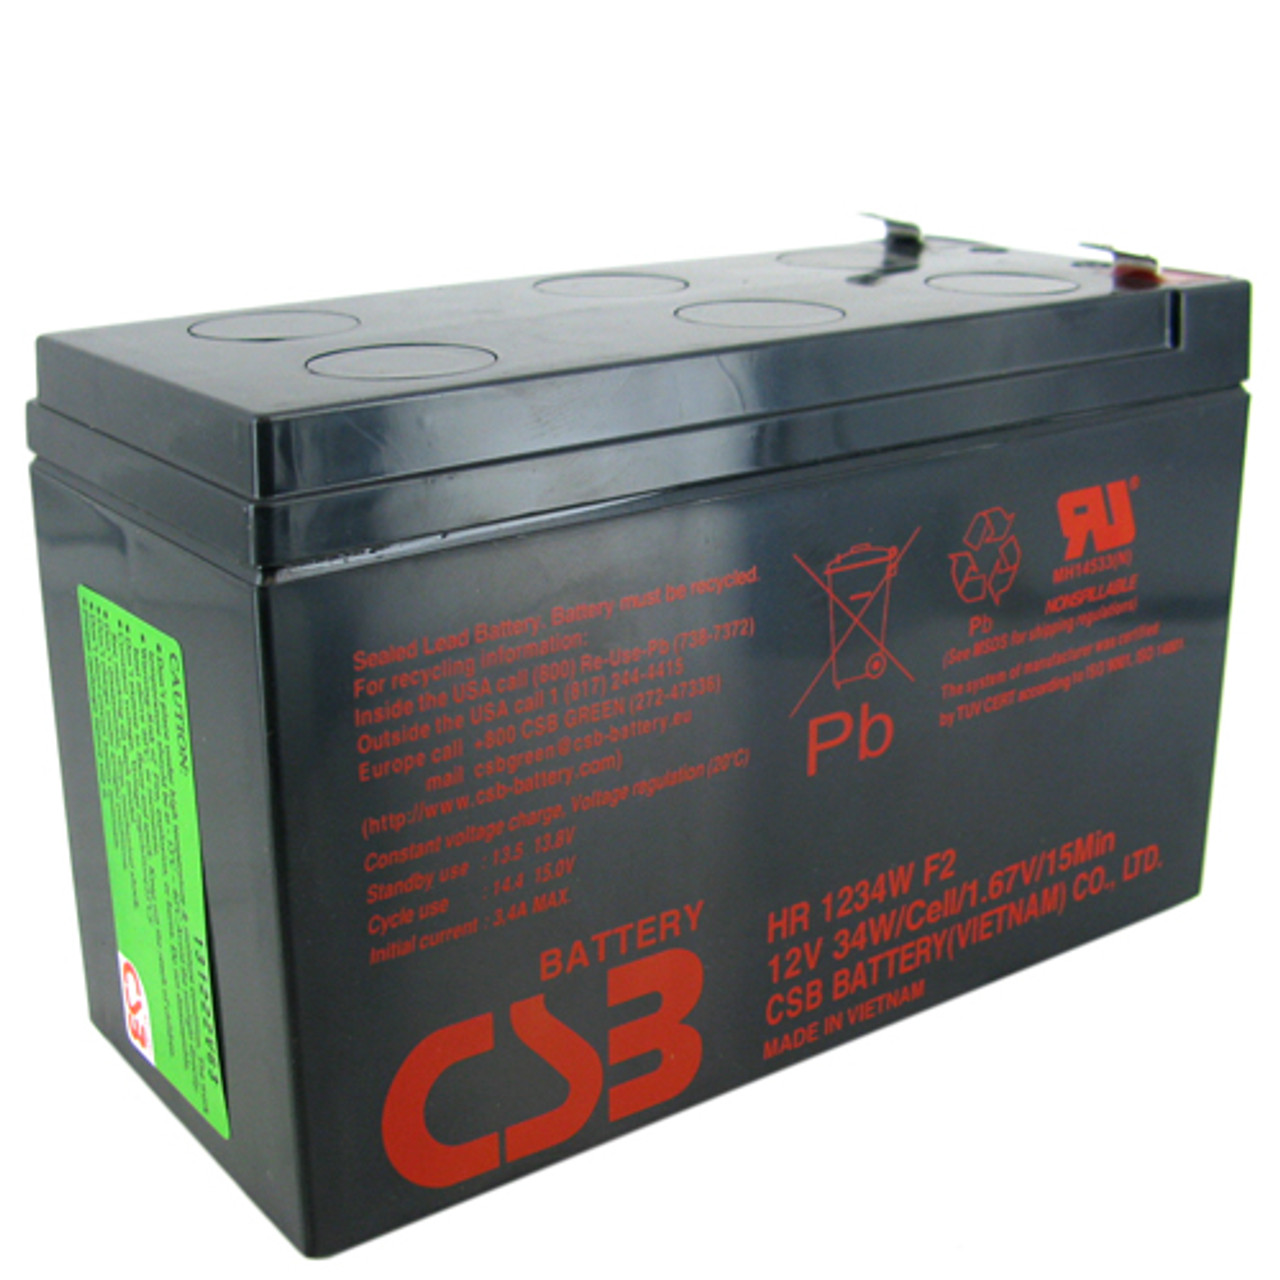 CSB HR 1234w f2. Батарея CSB HR 1234w f2. Аккумулятор CSB hr1234w f2 (12v,9ah) для ups. Аккумулятор csb hr1234w